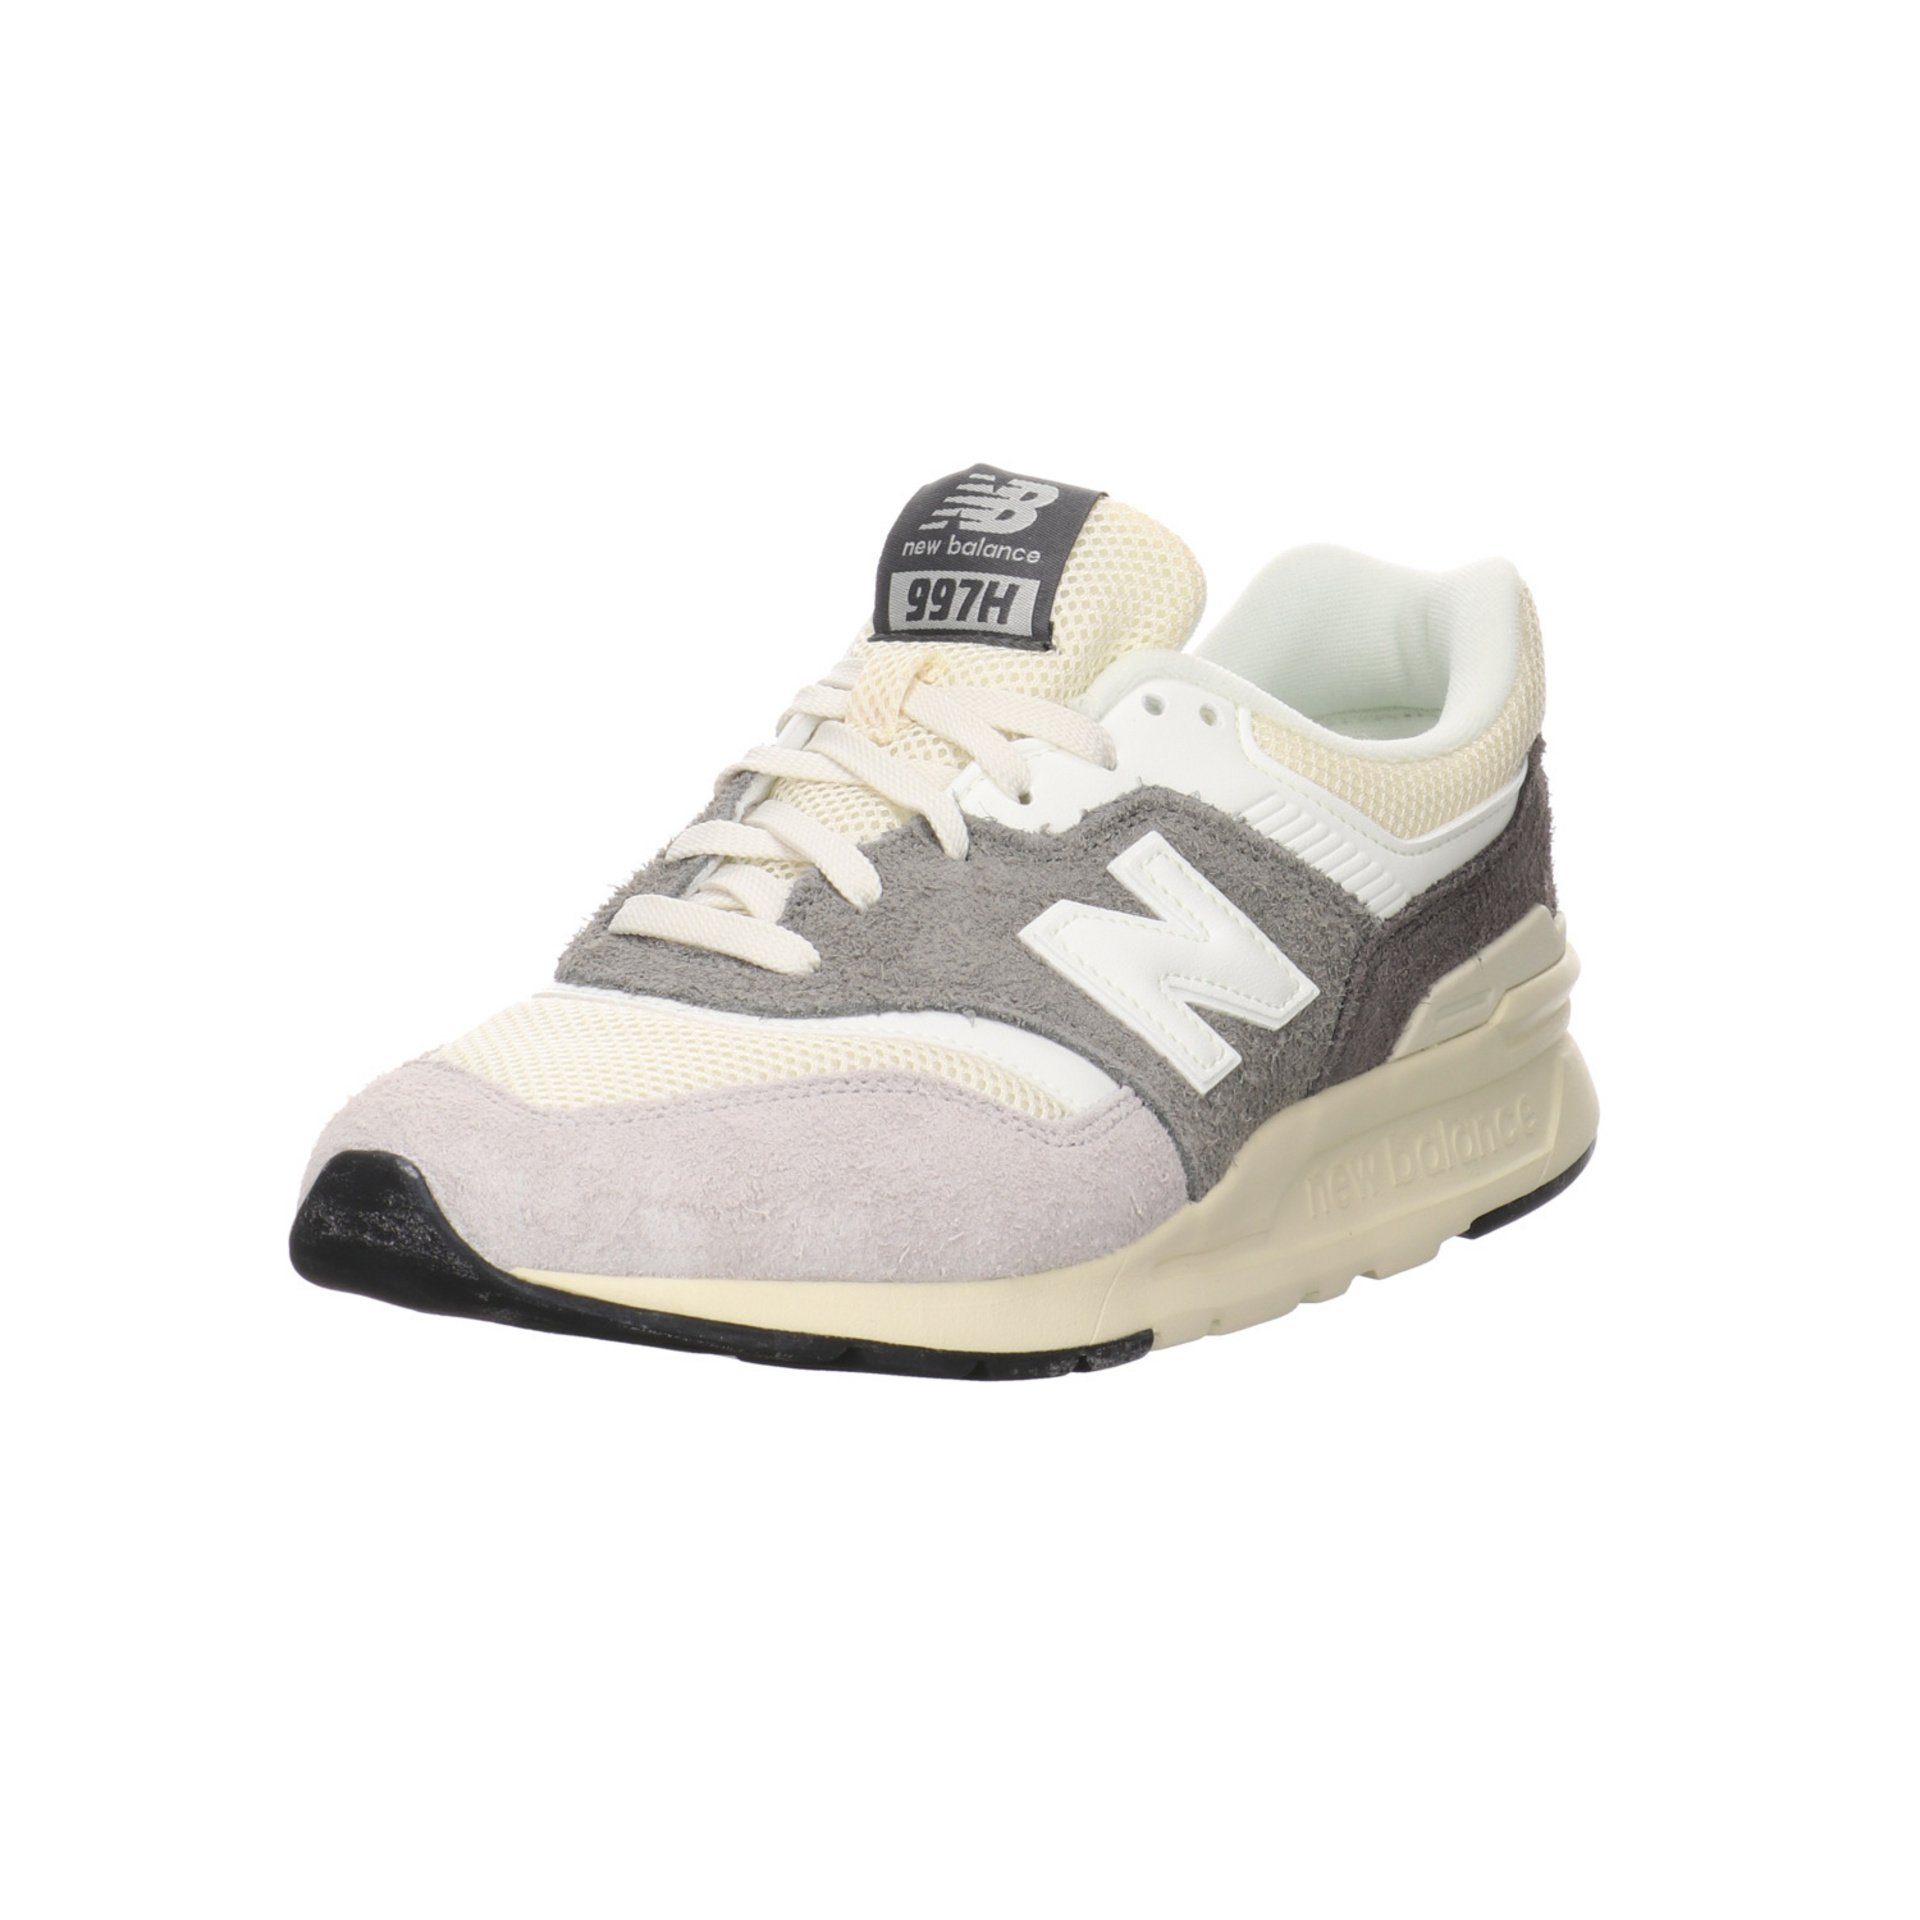 New Balance »Herren Schnürhalbschuhe 997 Sneaker« Schnürschuh Leder-/Textilkombination  online kaufen | OTTO